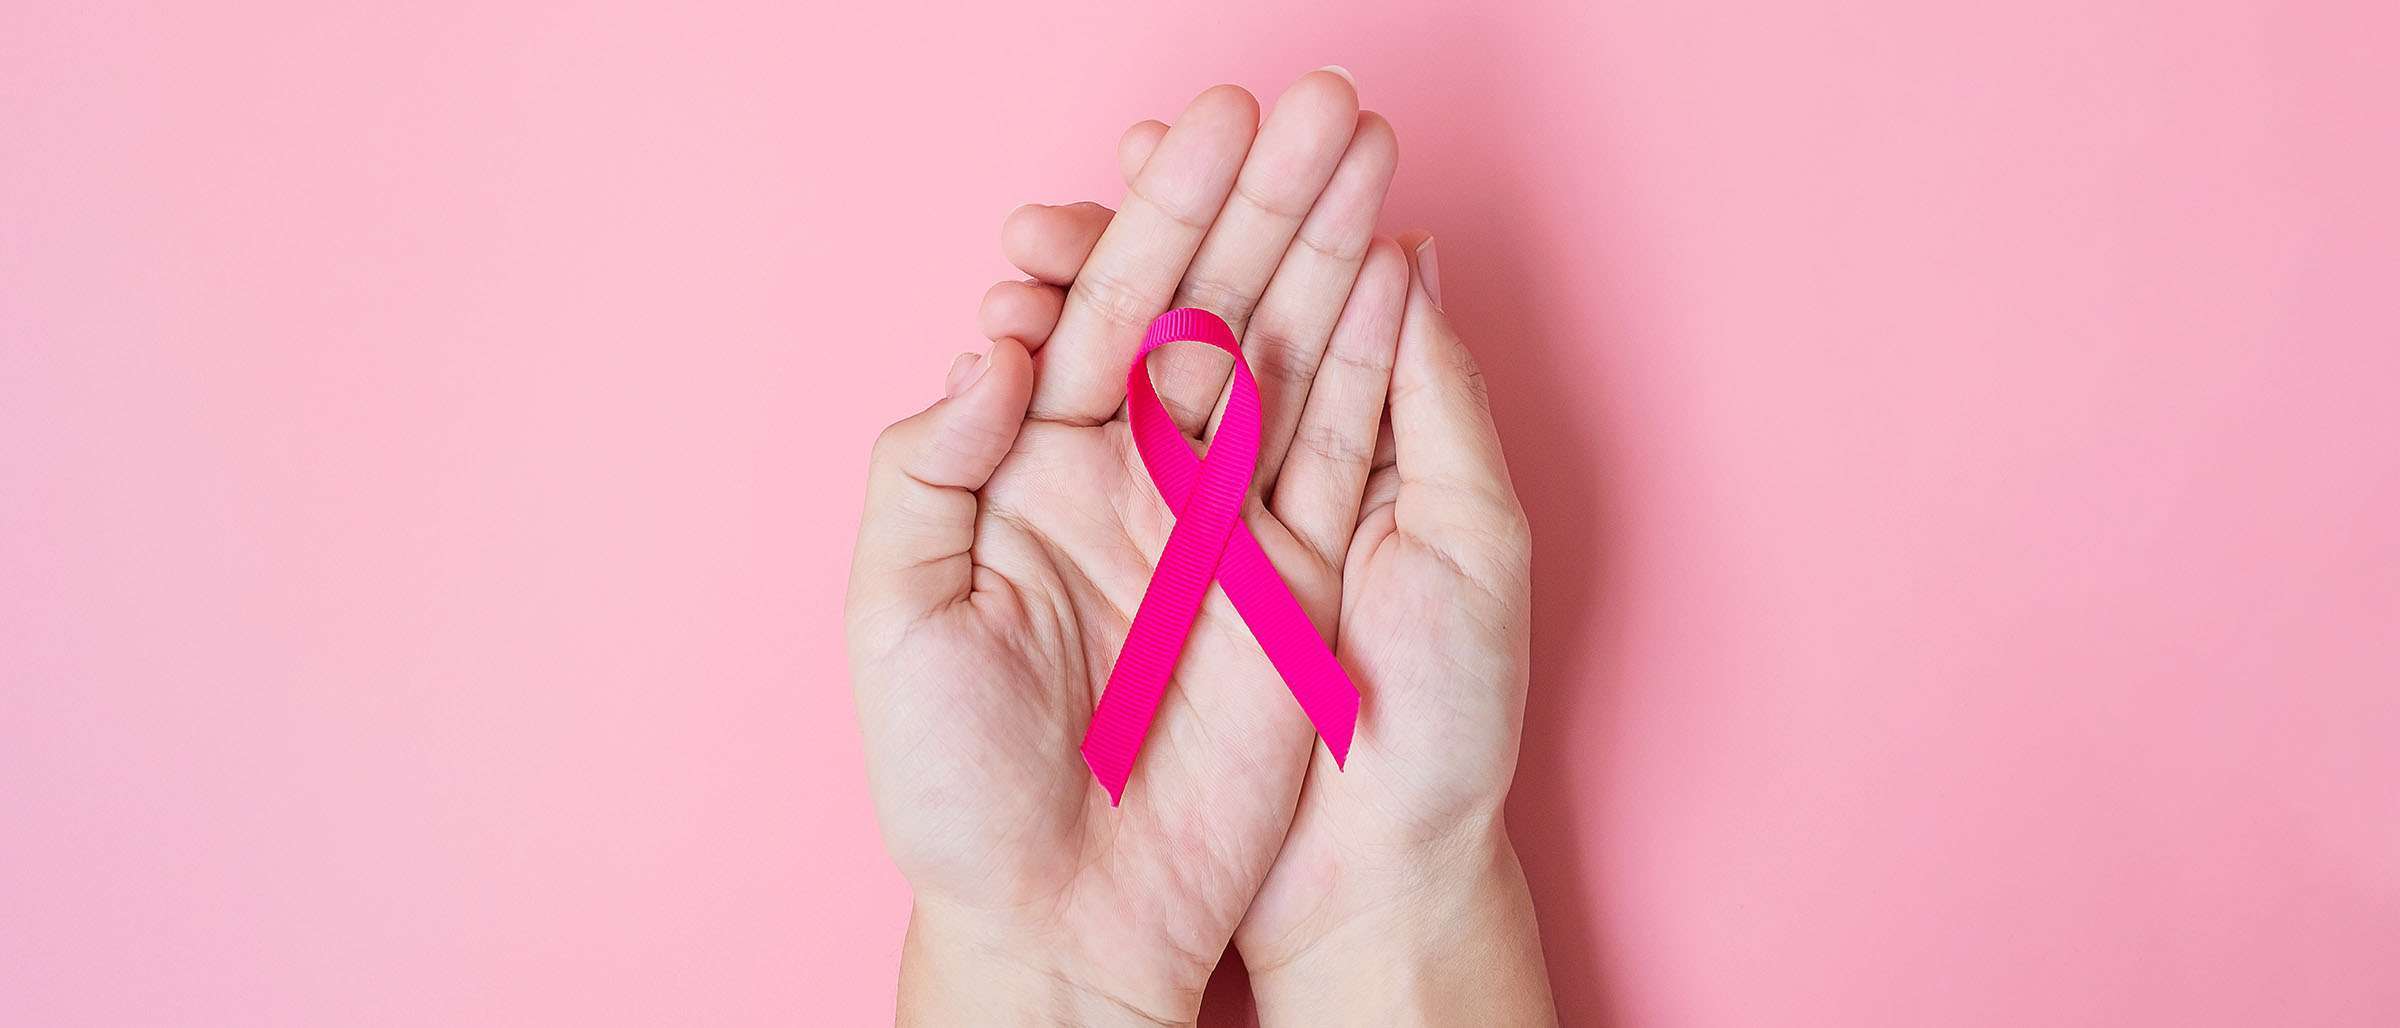 5 حقائق يجب أن تعرفيها عن سرطان الثدي لتشخيصه قبل فوات الأوان!